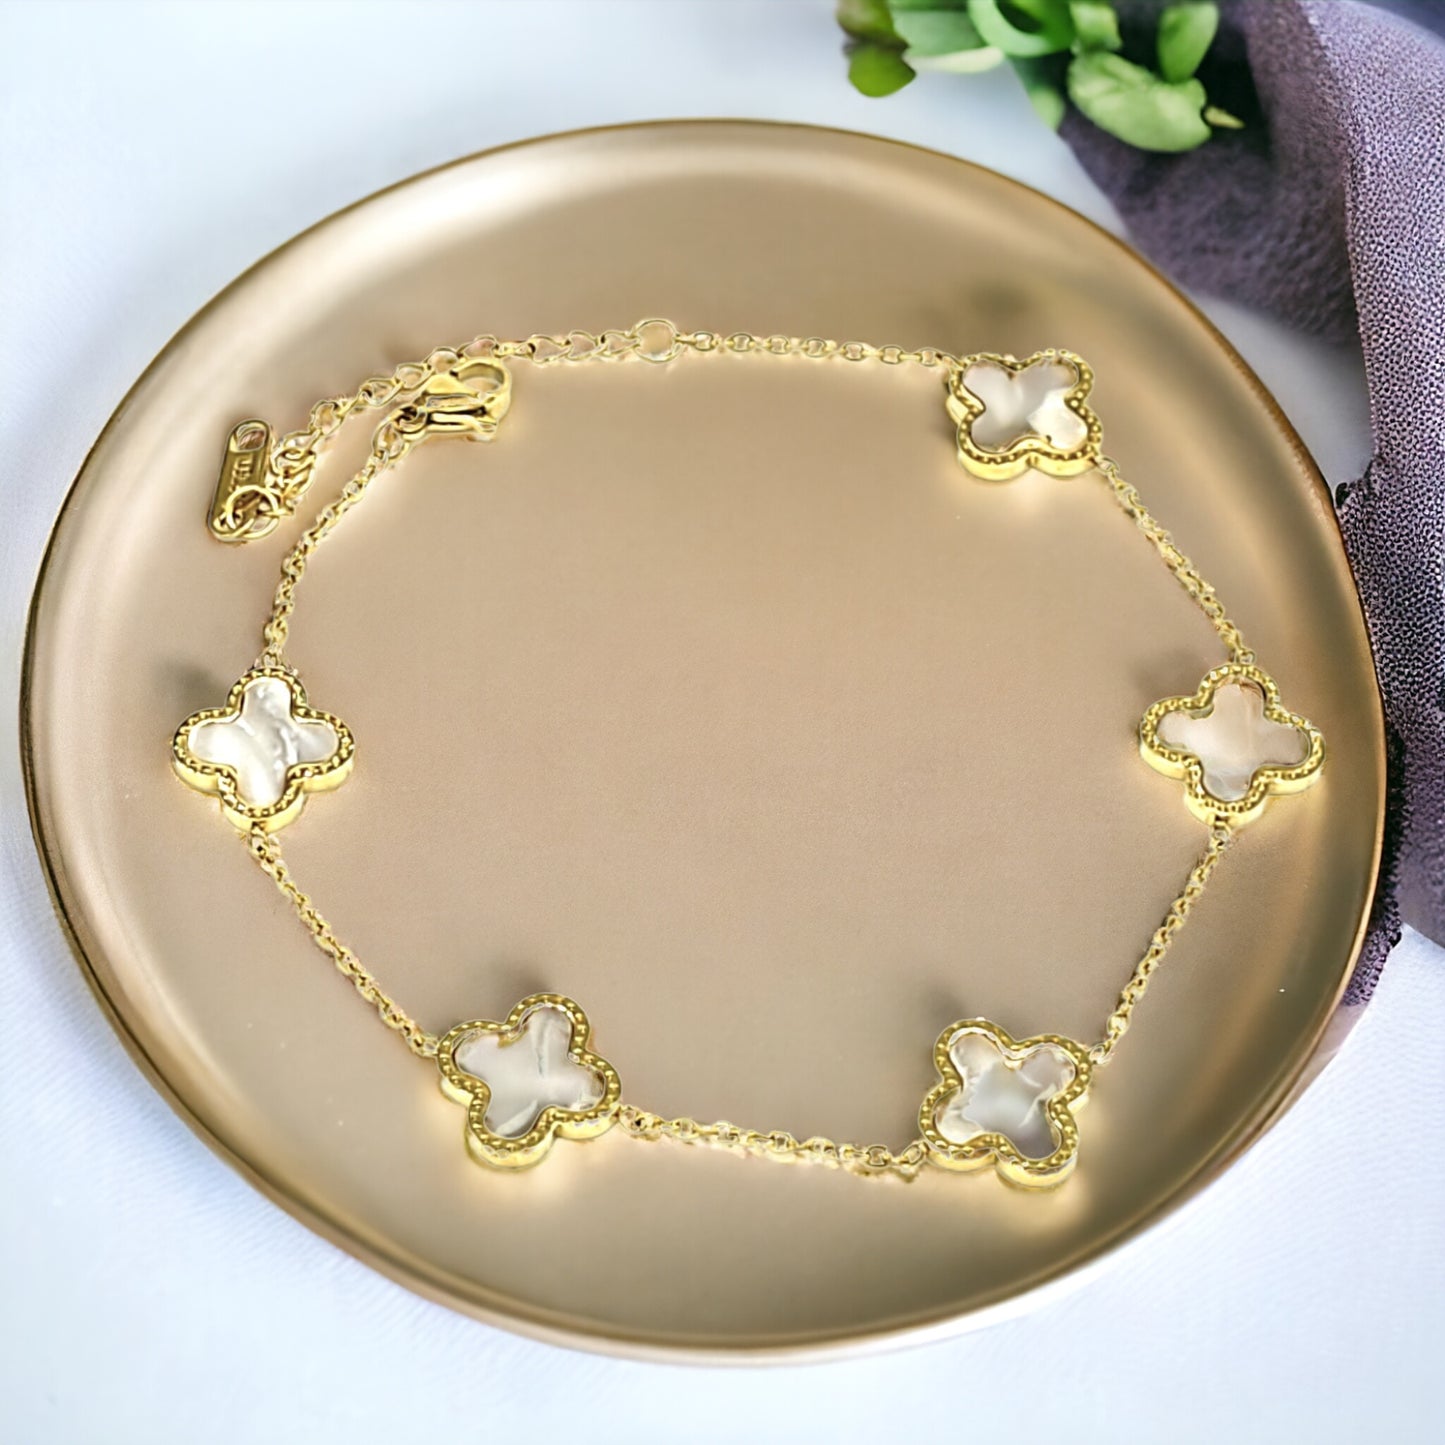 Gold Stainless Steel 5 Clover Bracelet - Marisa's Shopping Network 